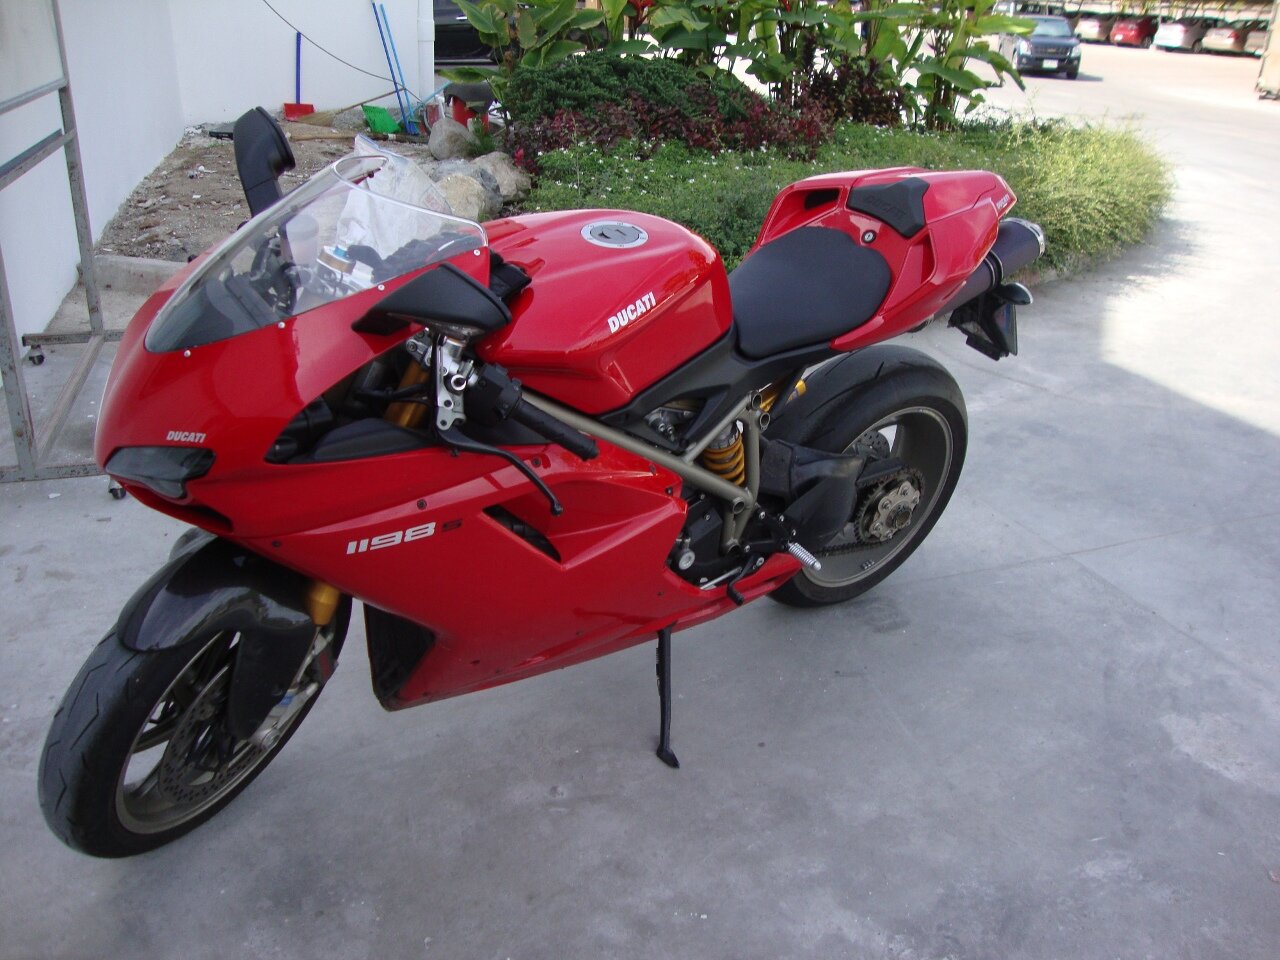 The Ducati 1198S